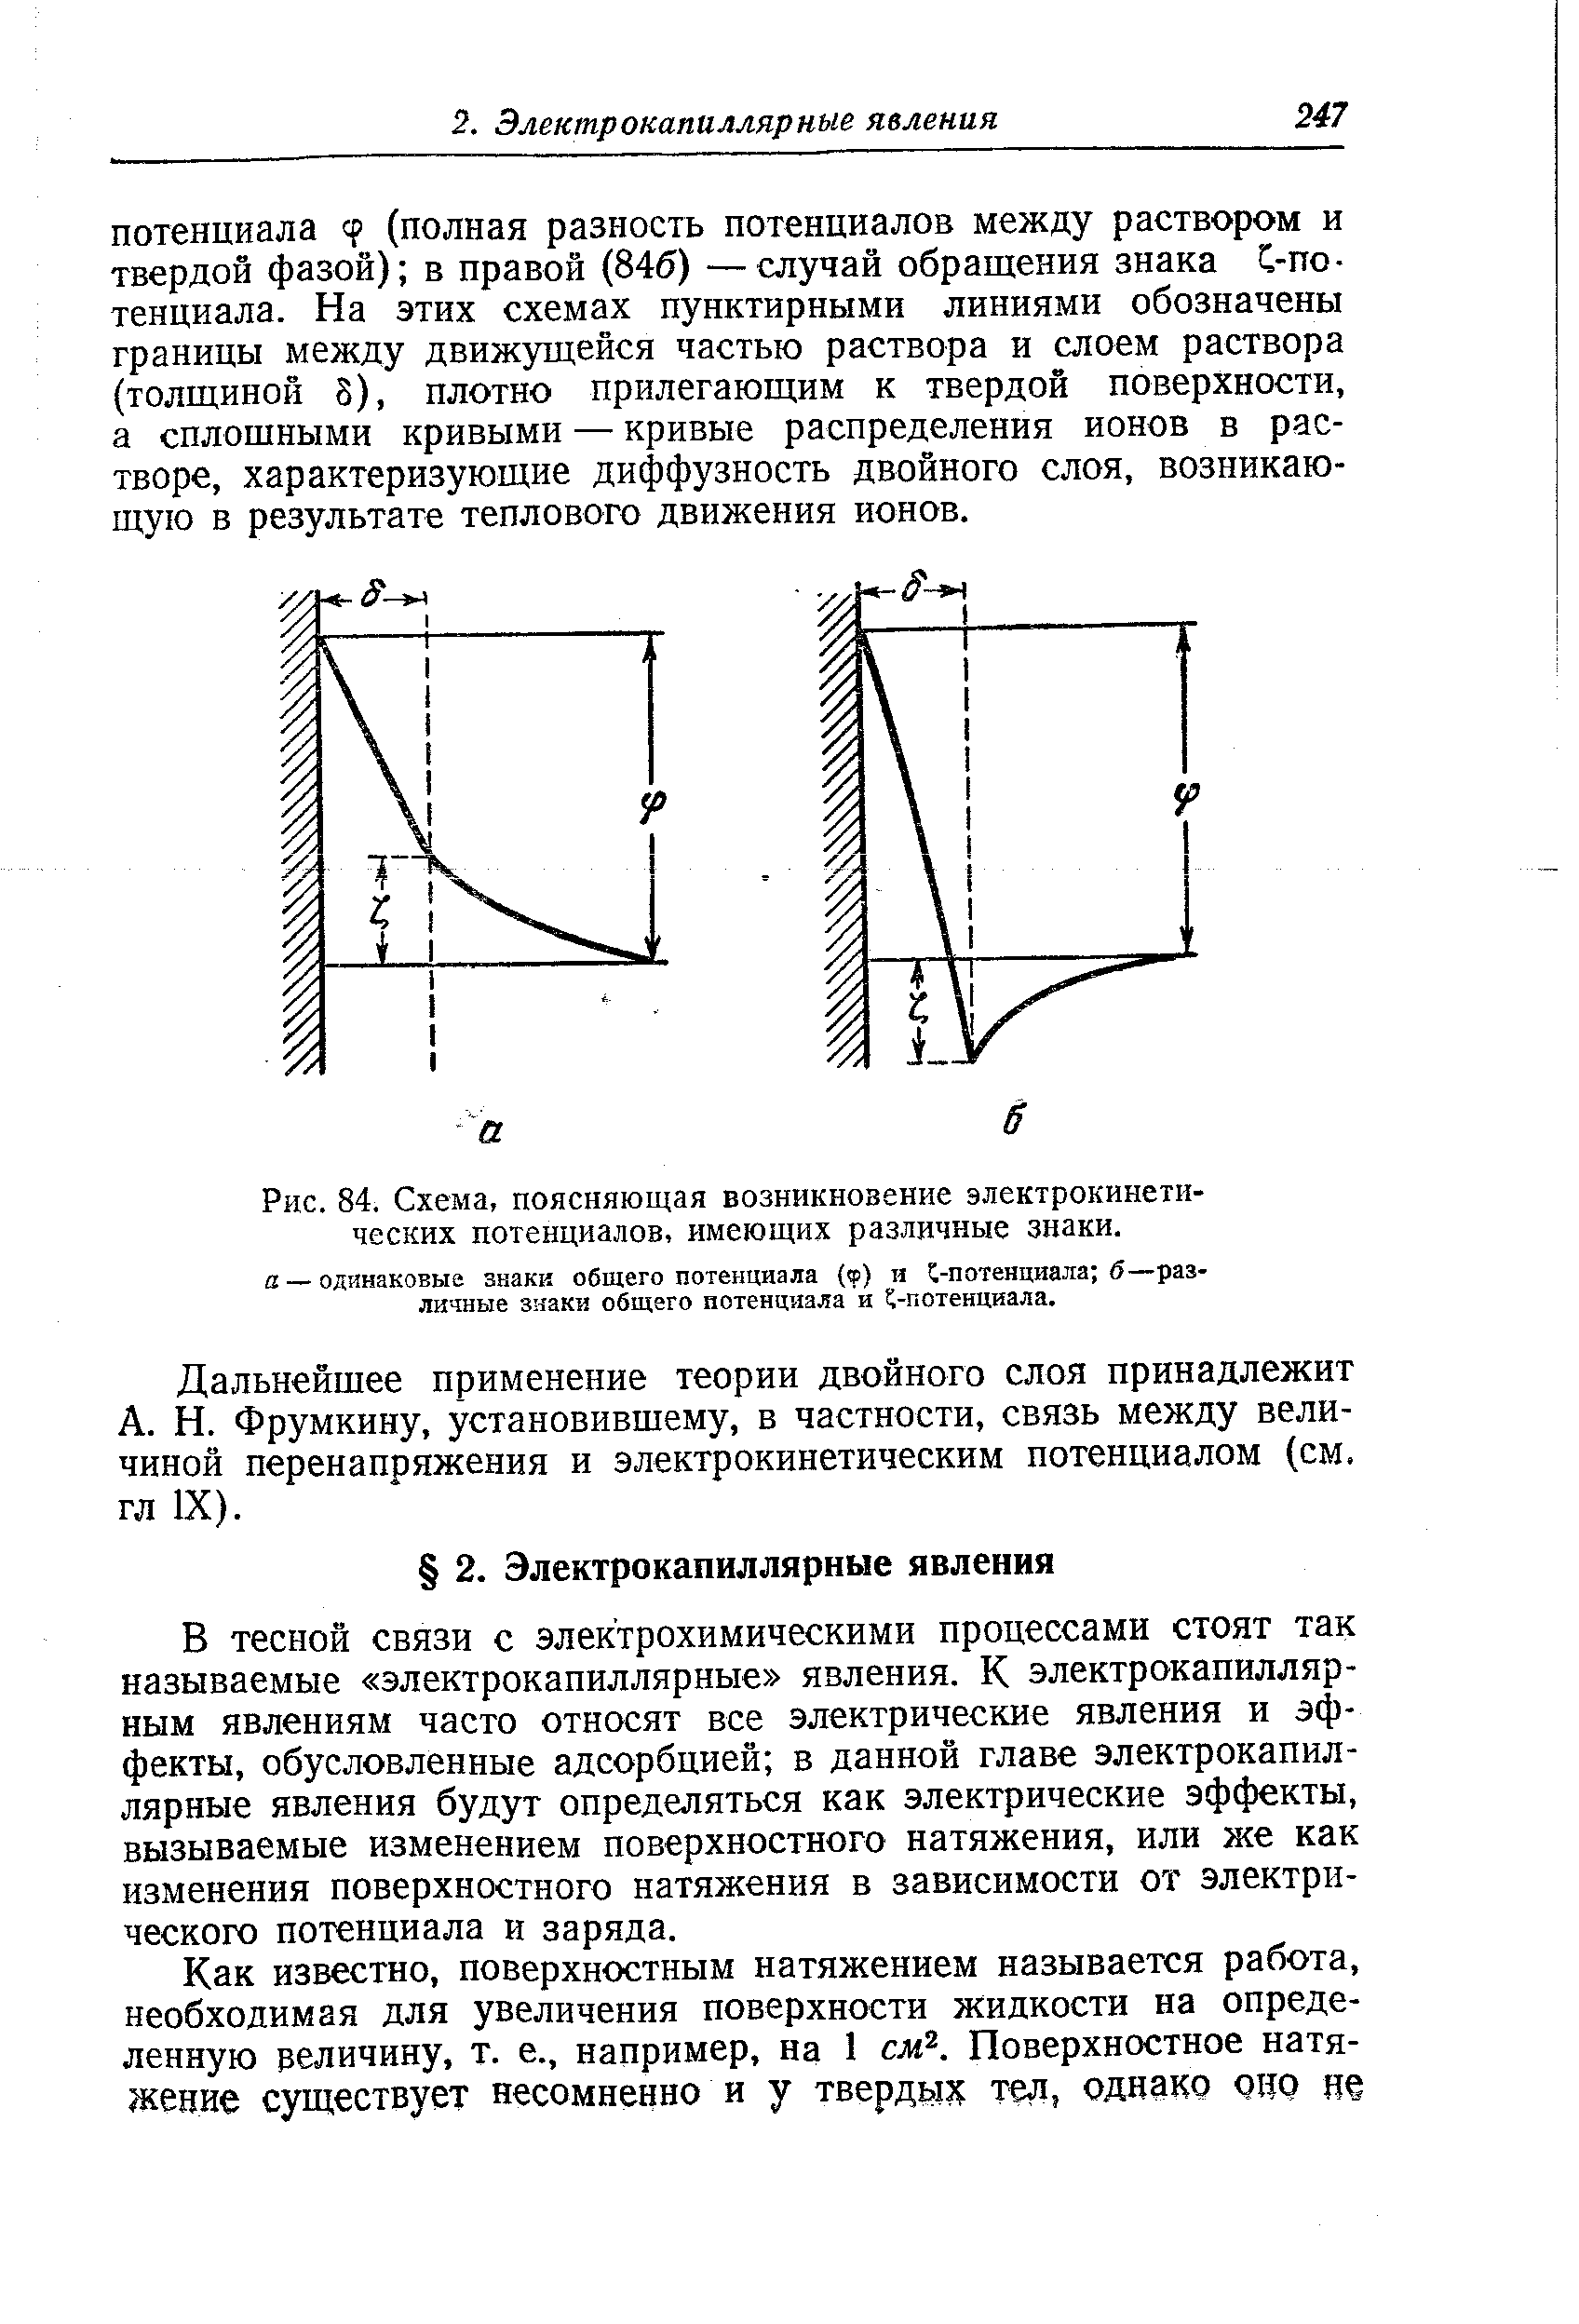 Дальнейшее применение теории двойного слоя принадлежит А. Н. Фрумкину, установившему, в частности, связь между величиной перенапряжения и электрокинетическим потенциалом (см. гл IX).